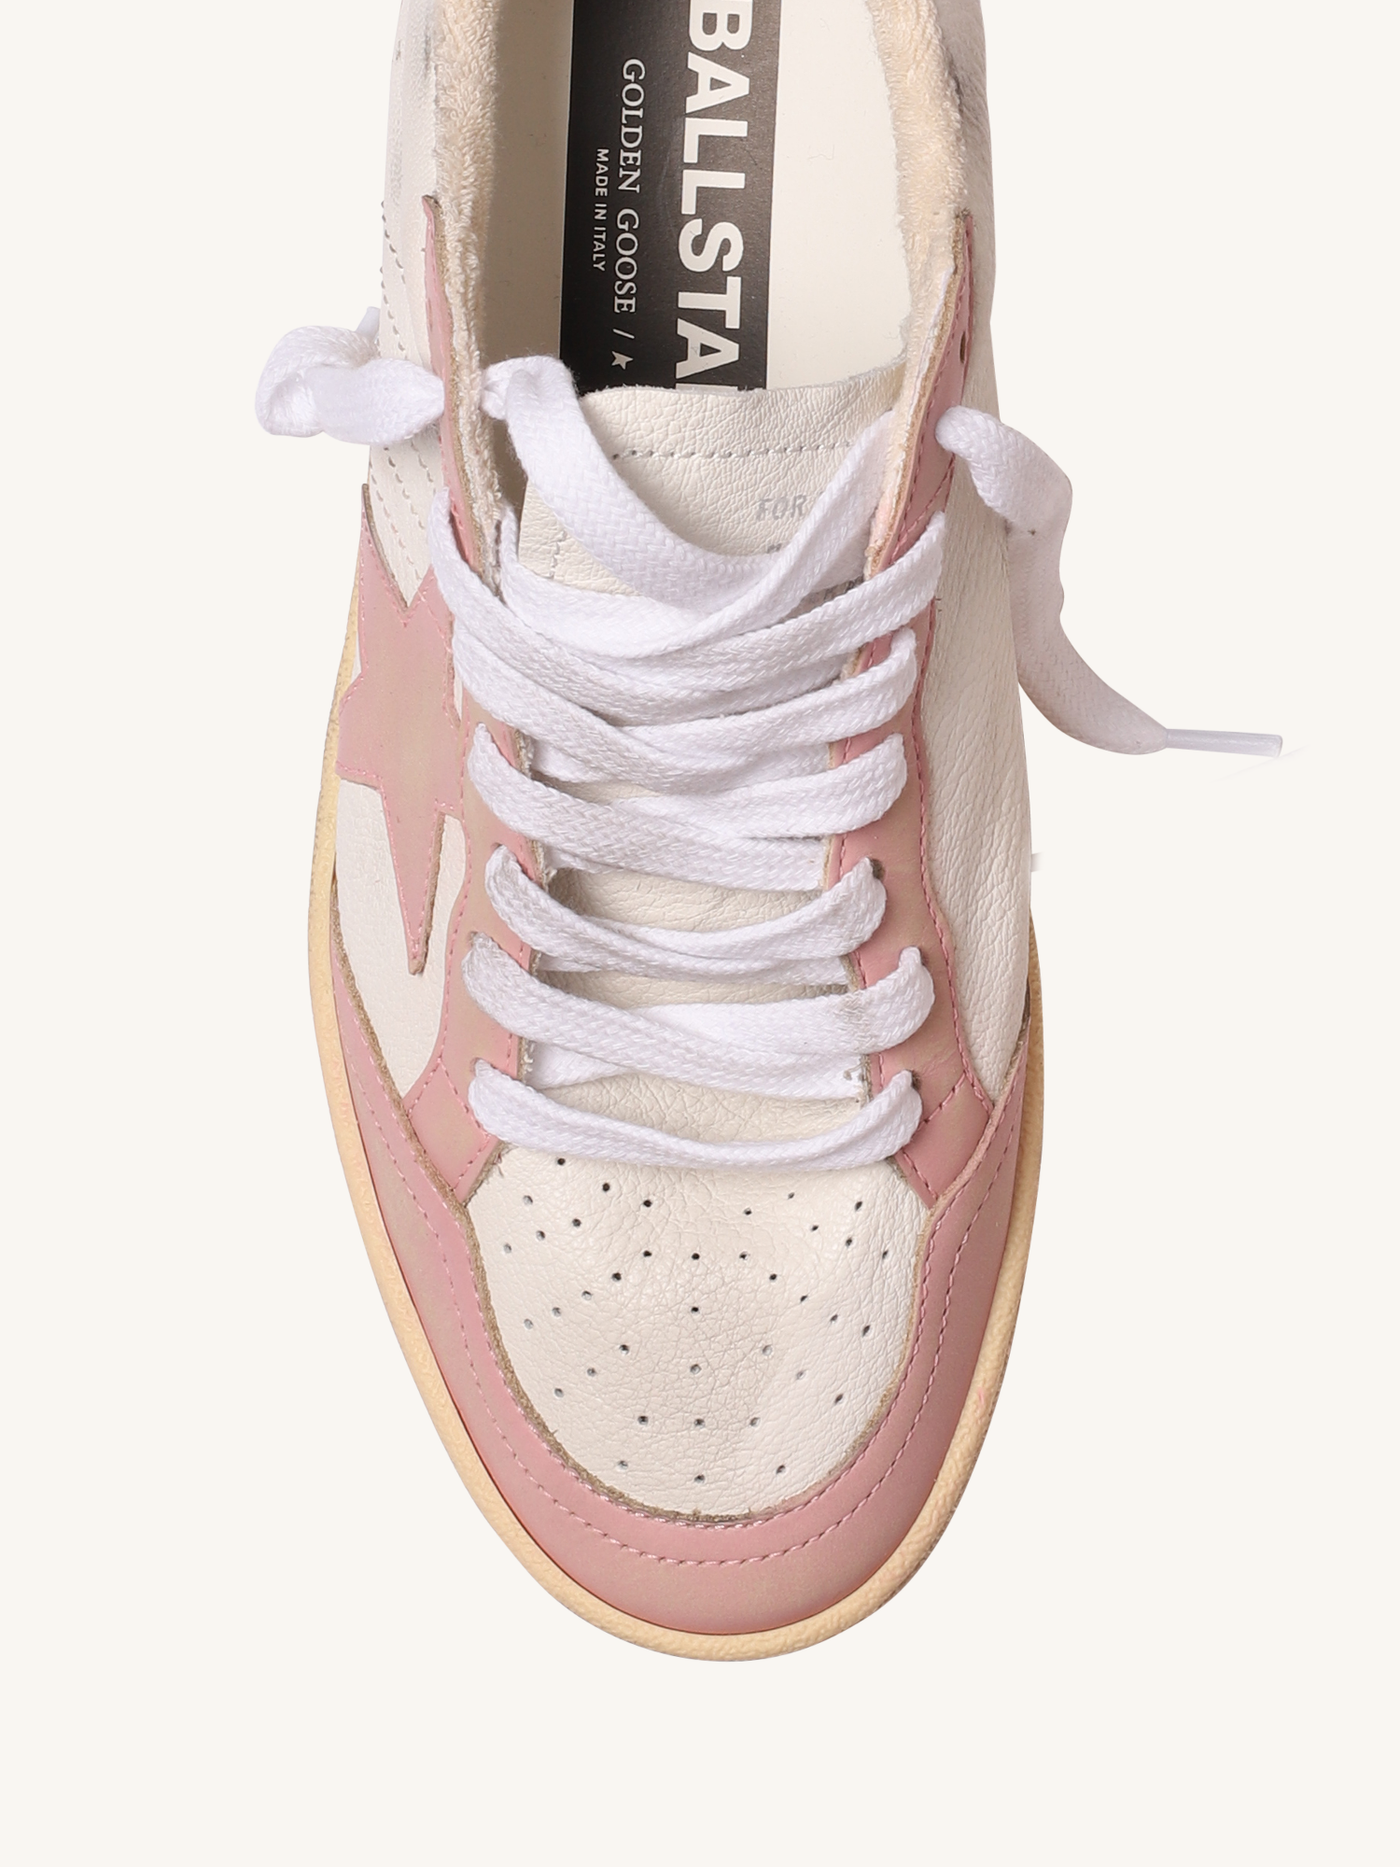 Ballstar Sneaker in White & Pink